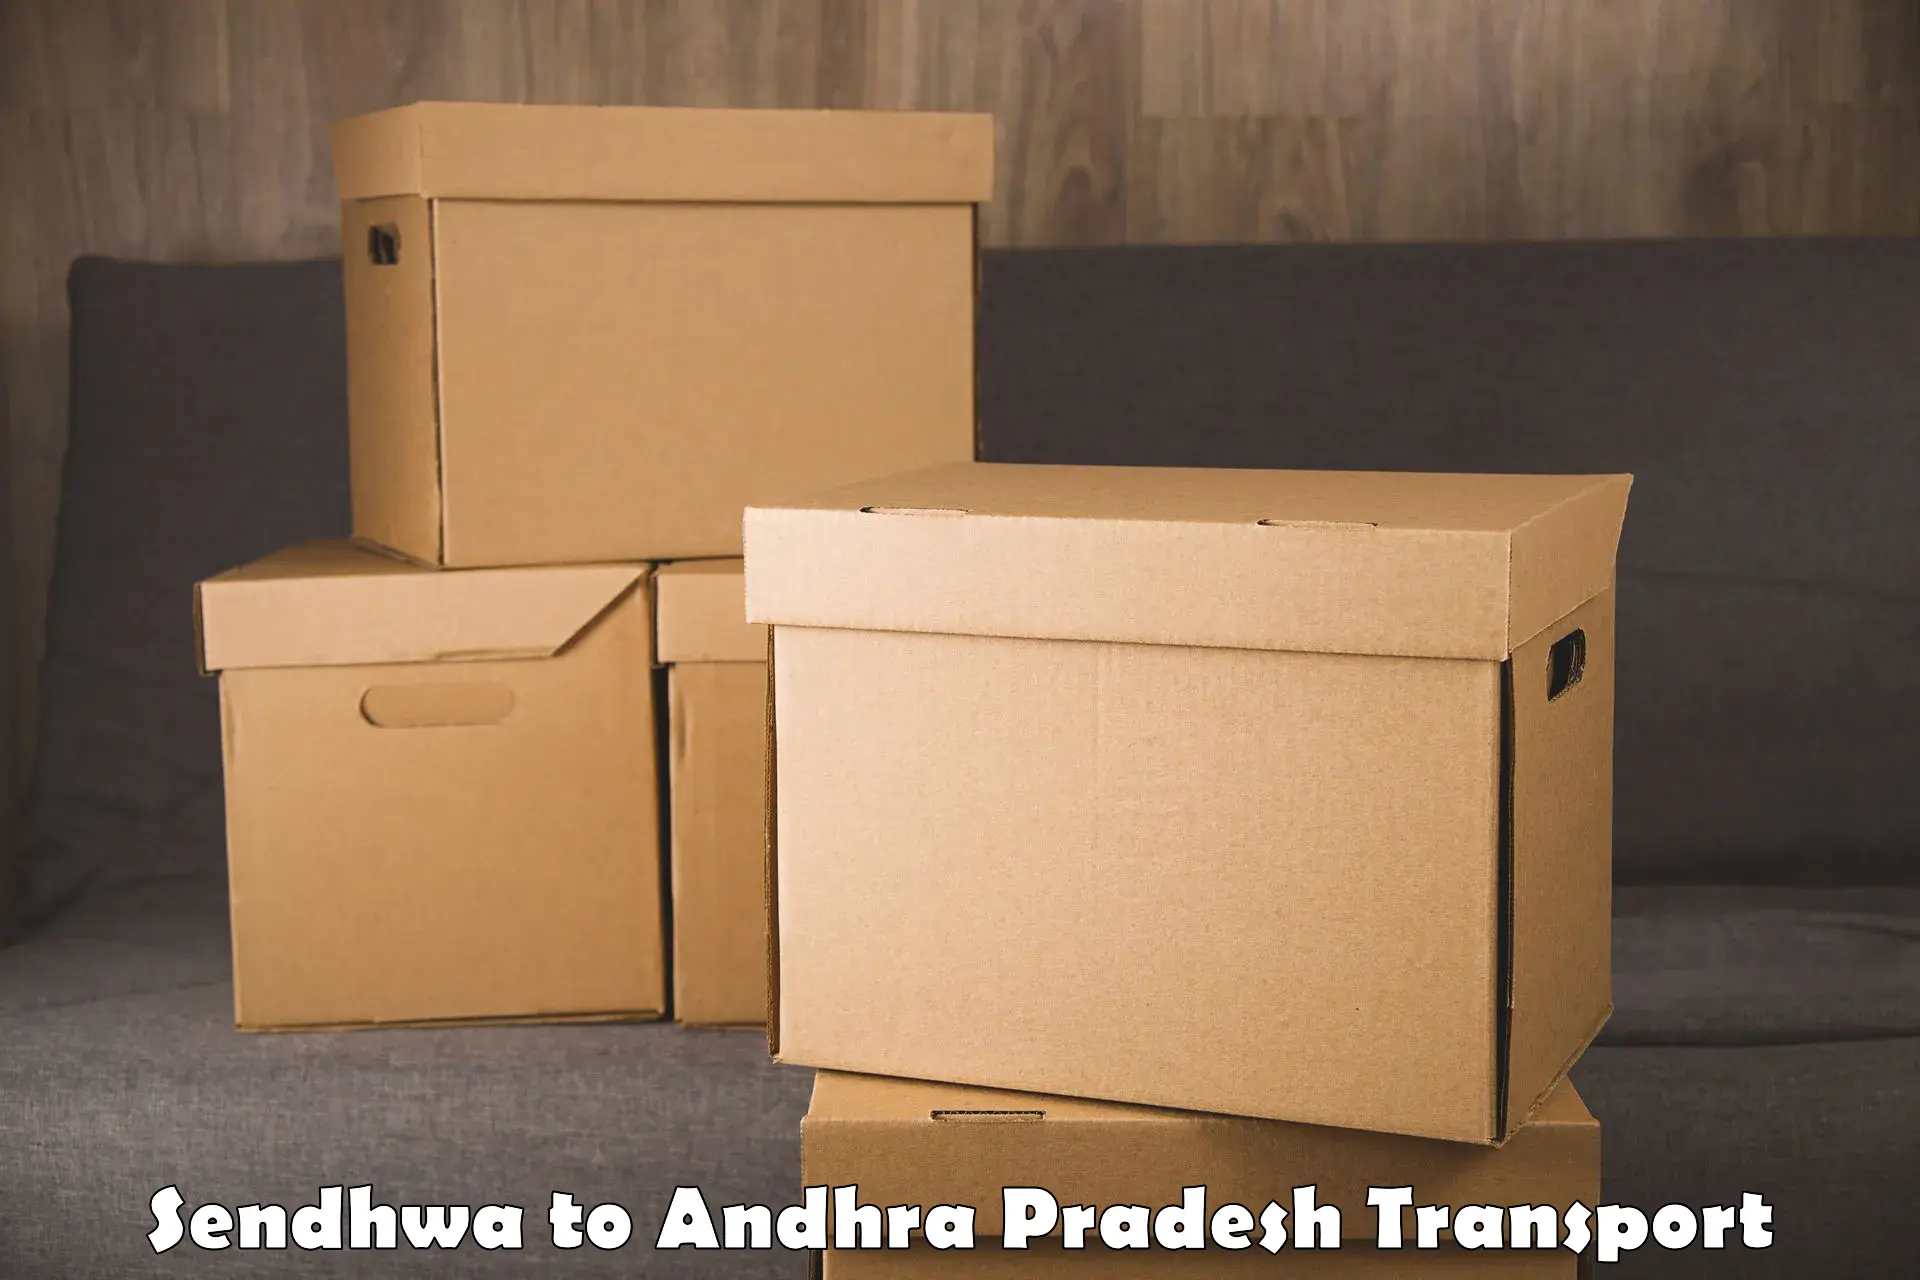 Delivery service Sendhwa to Chitrada